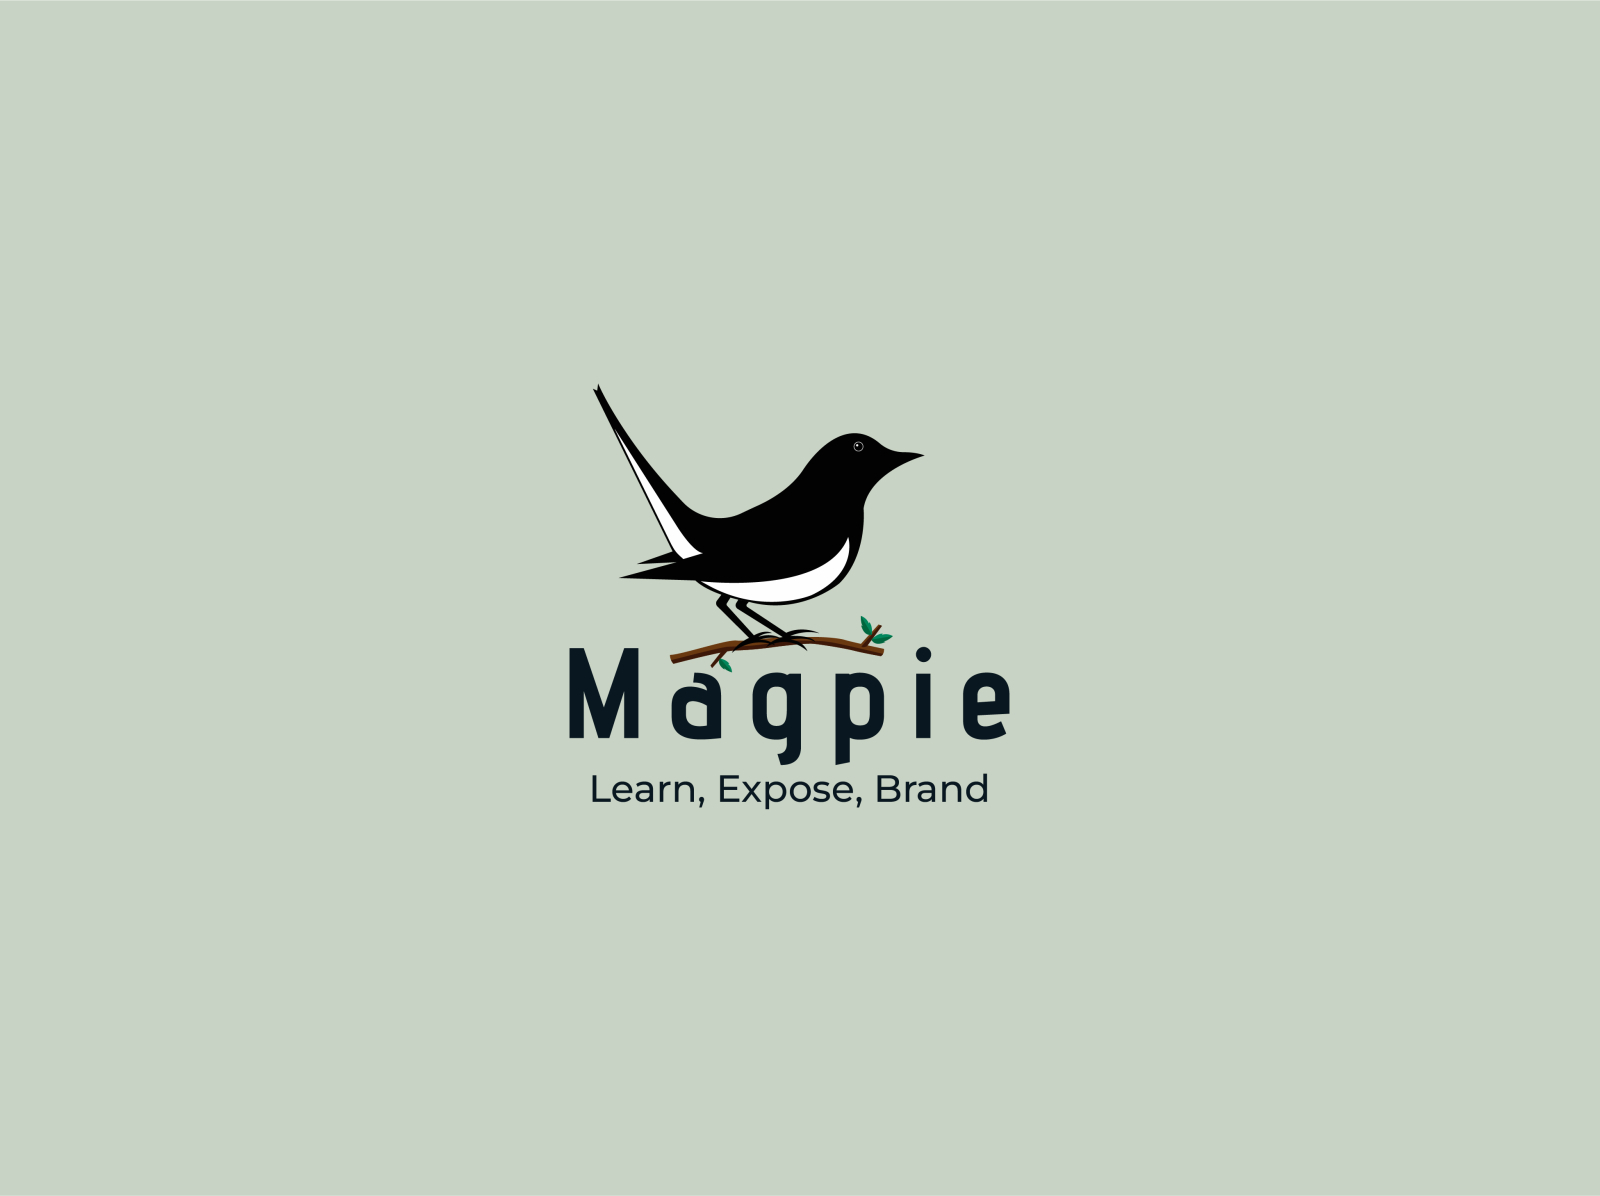 Magpie Logo Branding by Khairul Bashar on Dribbble